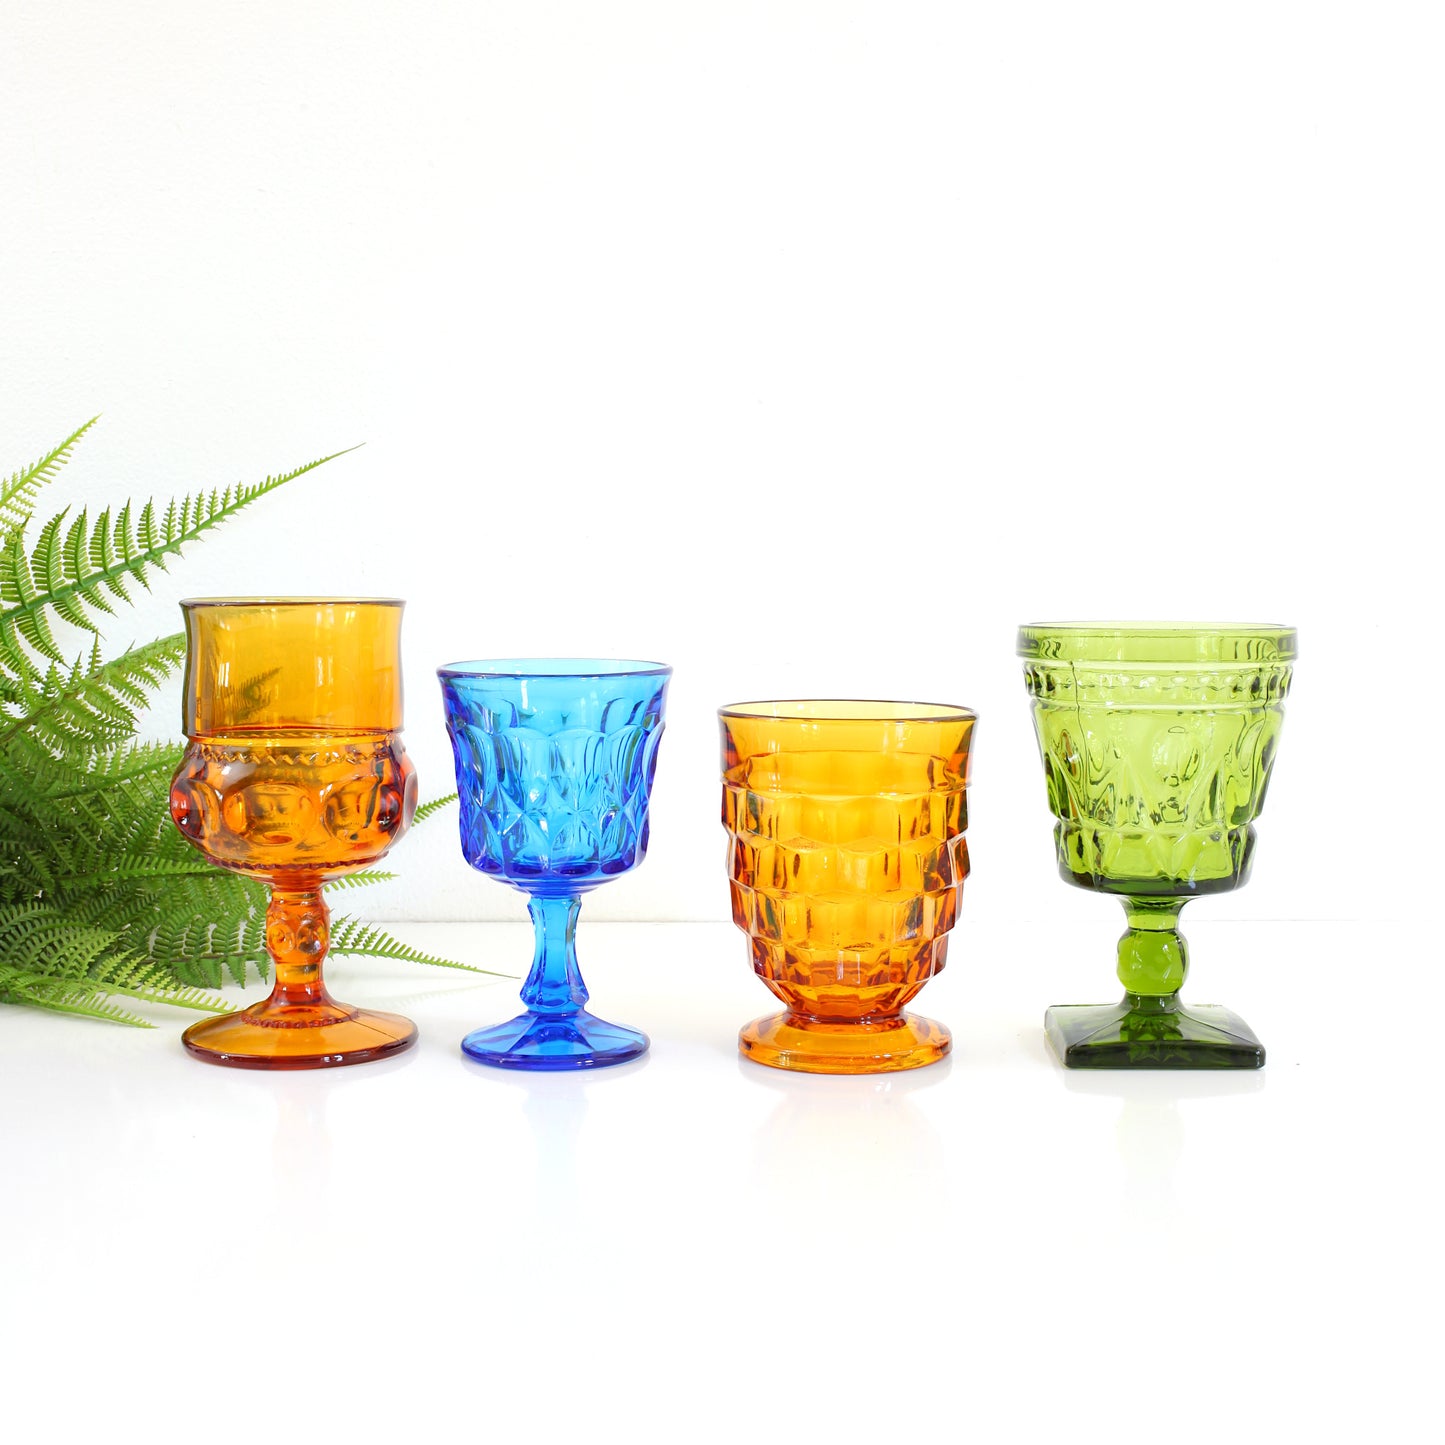 SOLD - Set of Colorful Vintage Mismatched Goblets